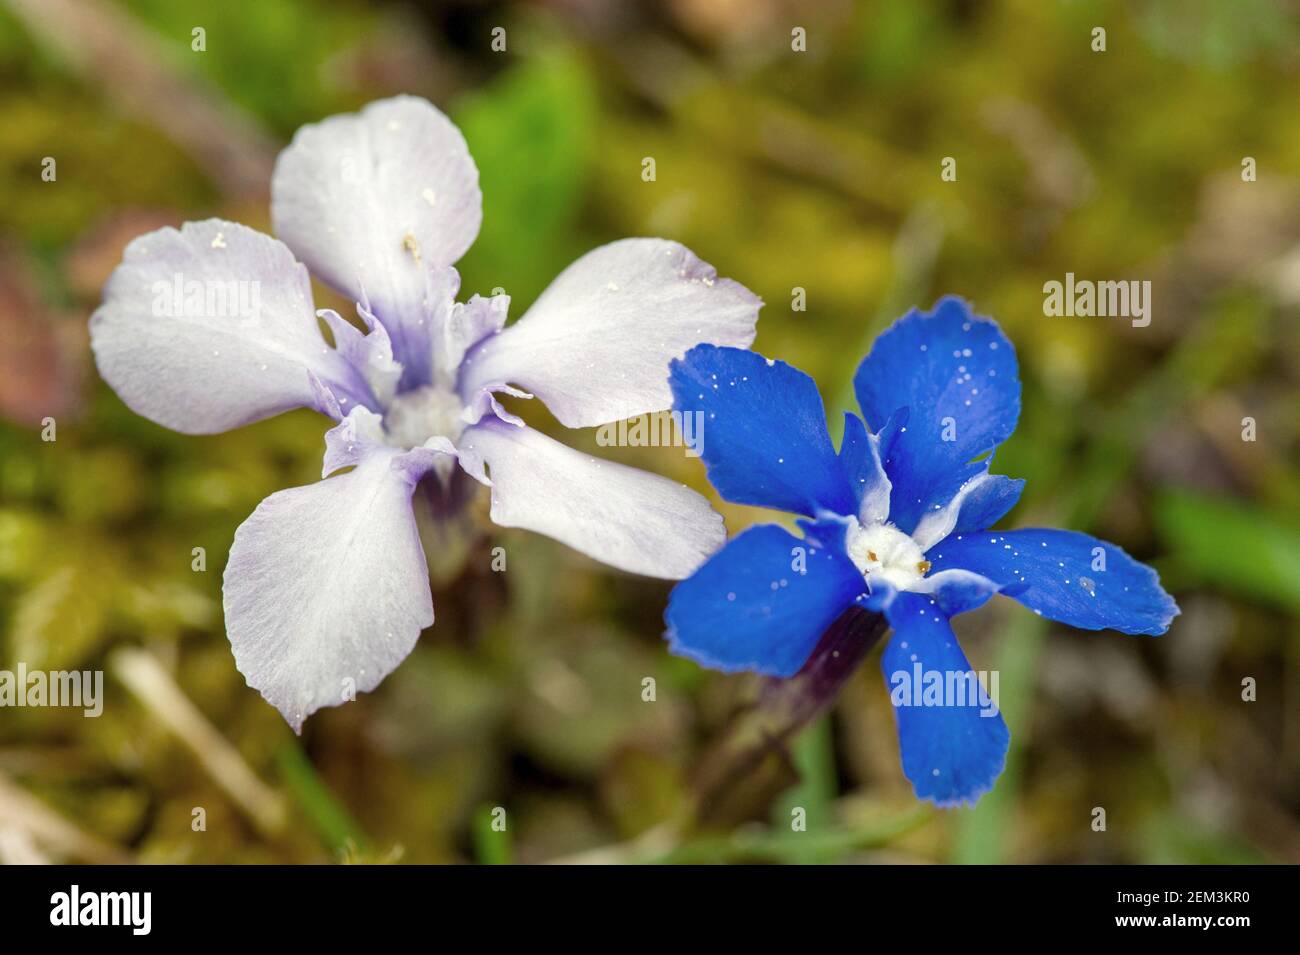 Primavera genciana (gentiana verna), flores blancas y azules, Alemania, Baden-Württemberg Foto de stock